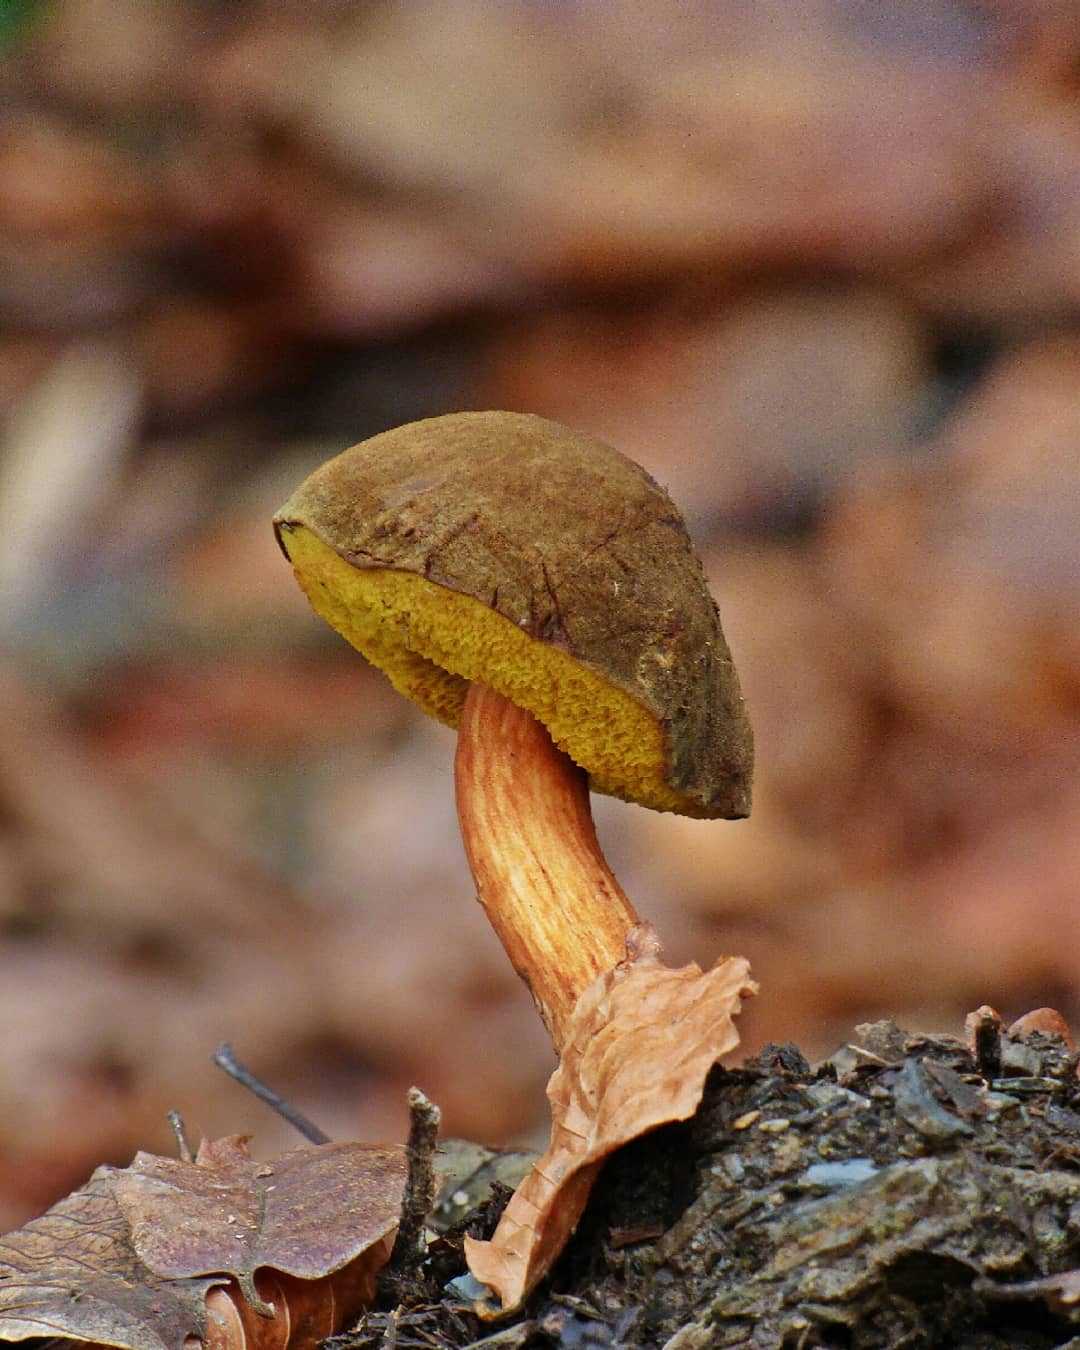 Подореховик гриб фото и описание